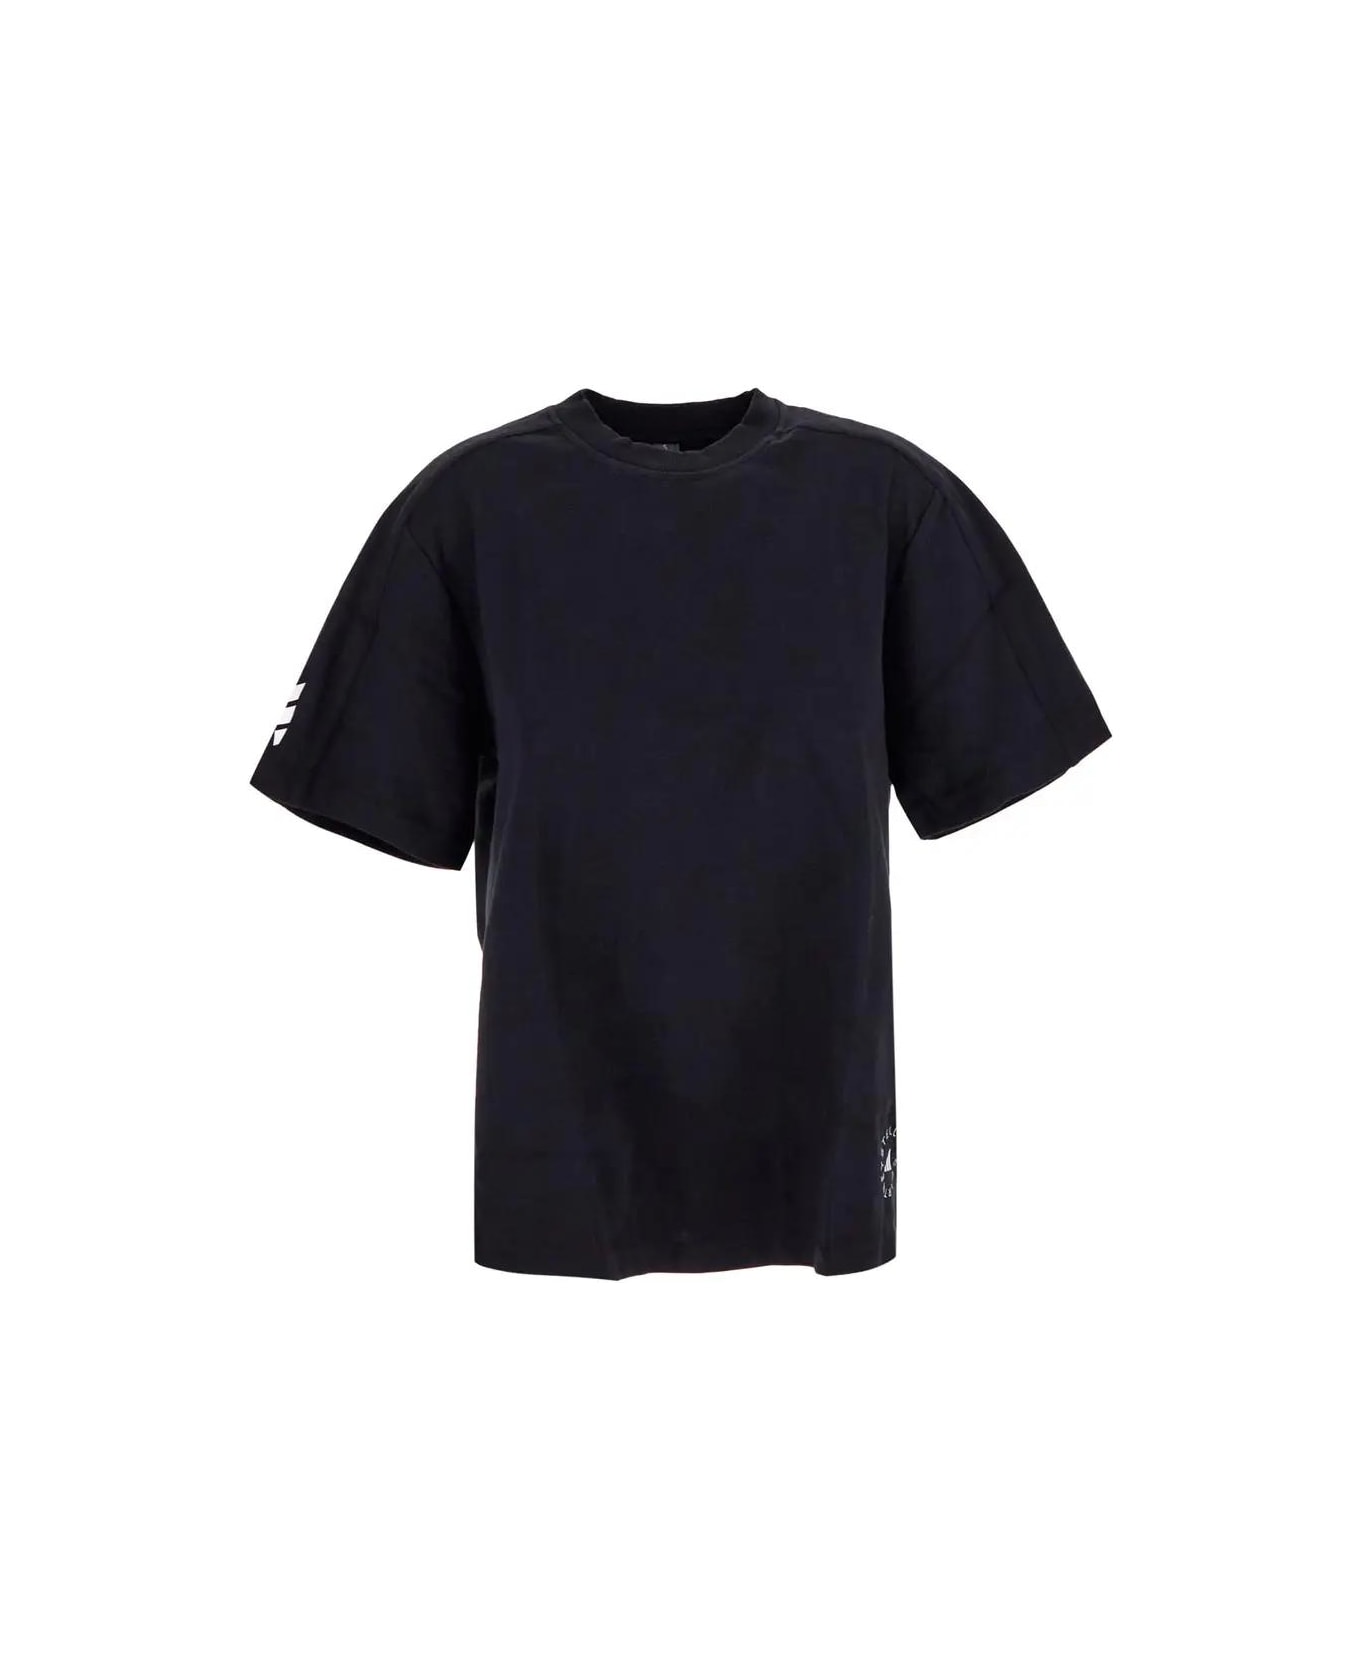 Adidas by Stella McCartney Logo T-shirt Tシャツ